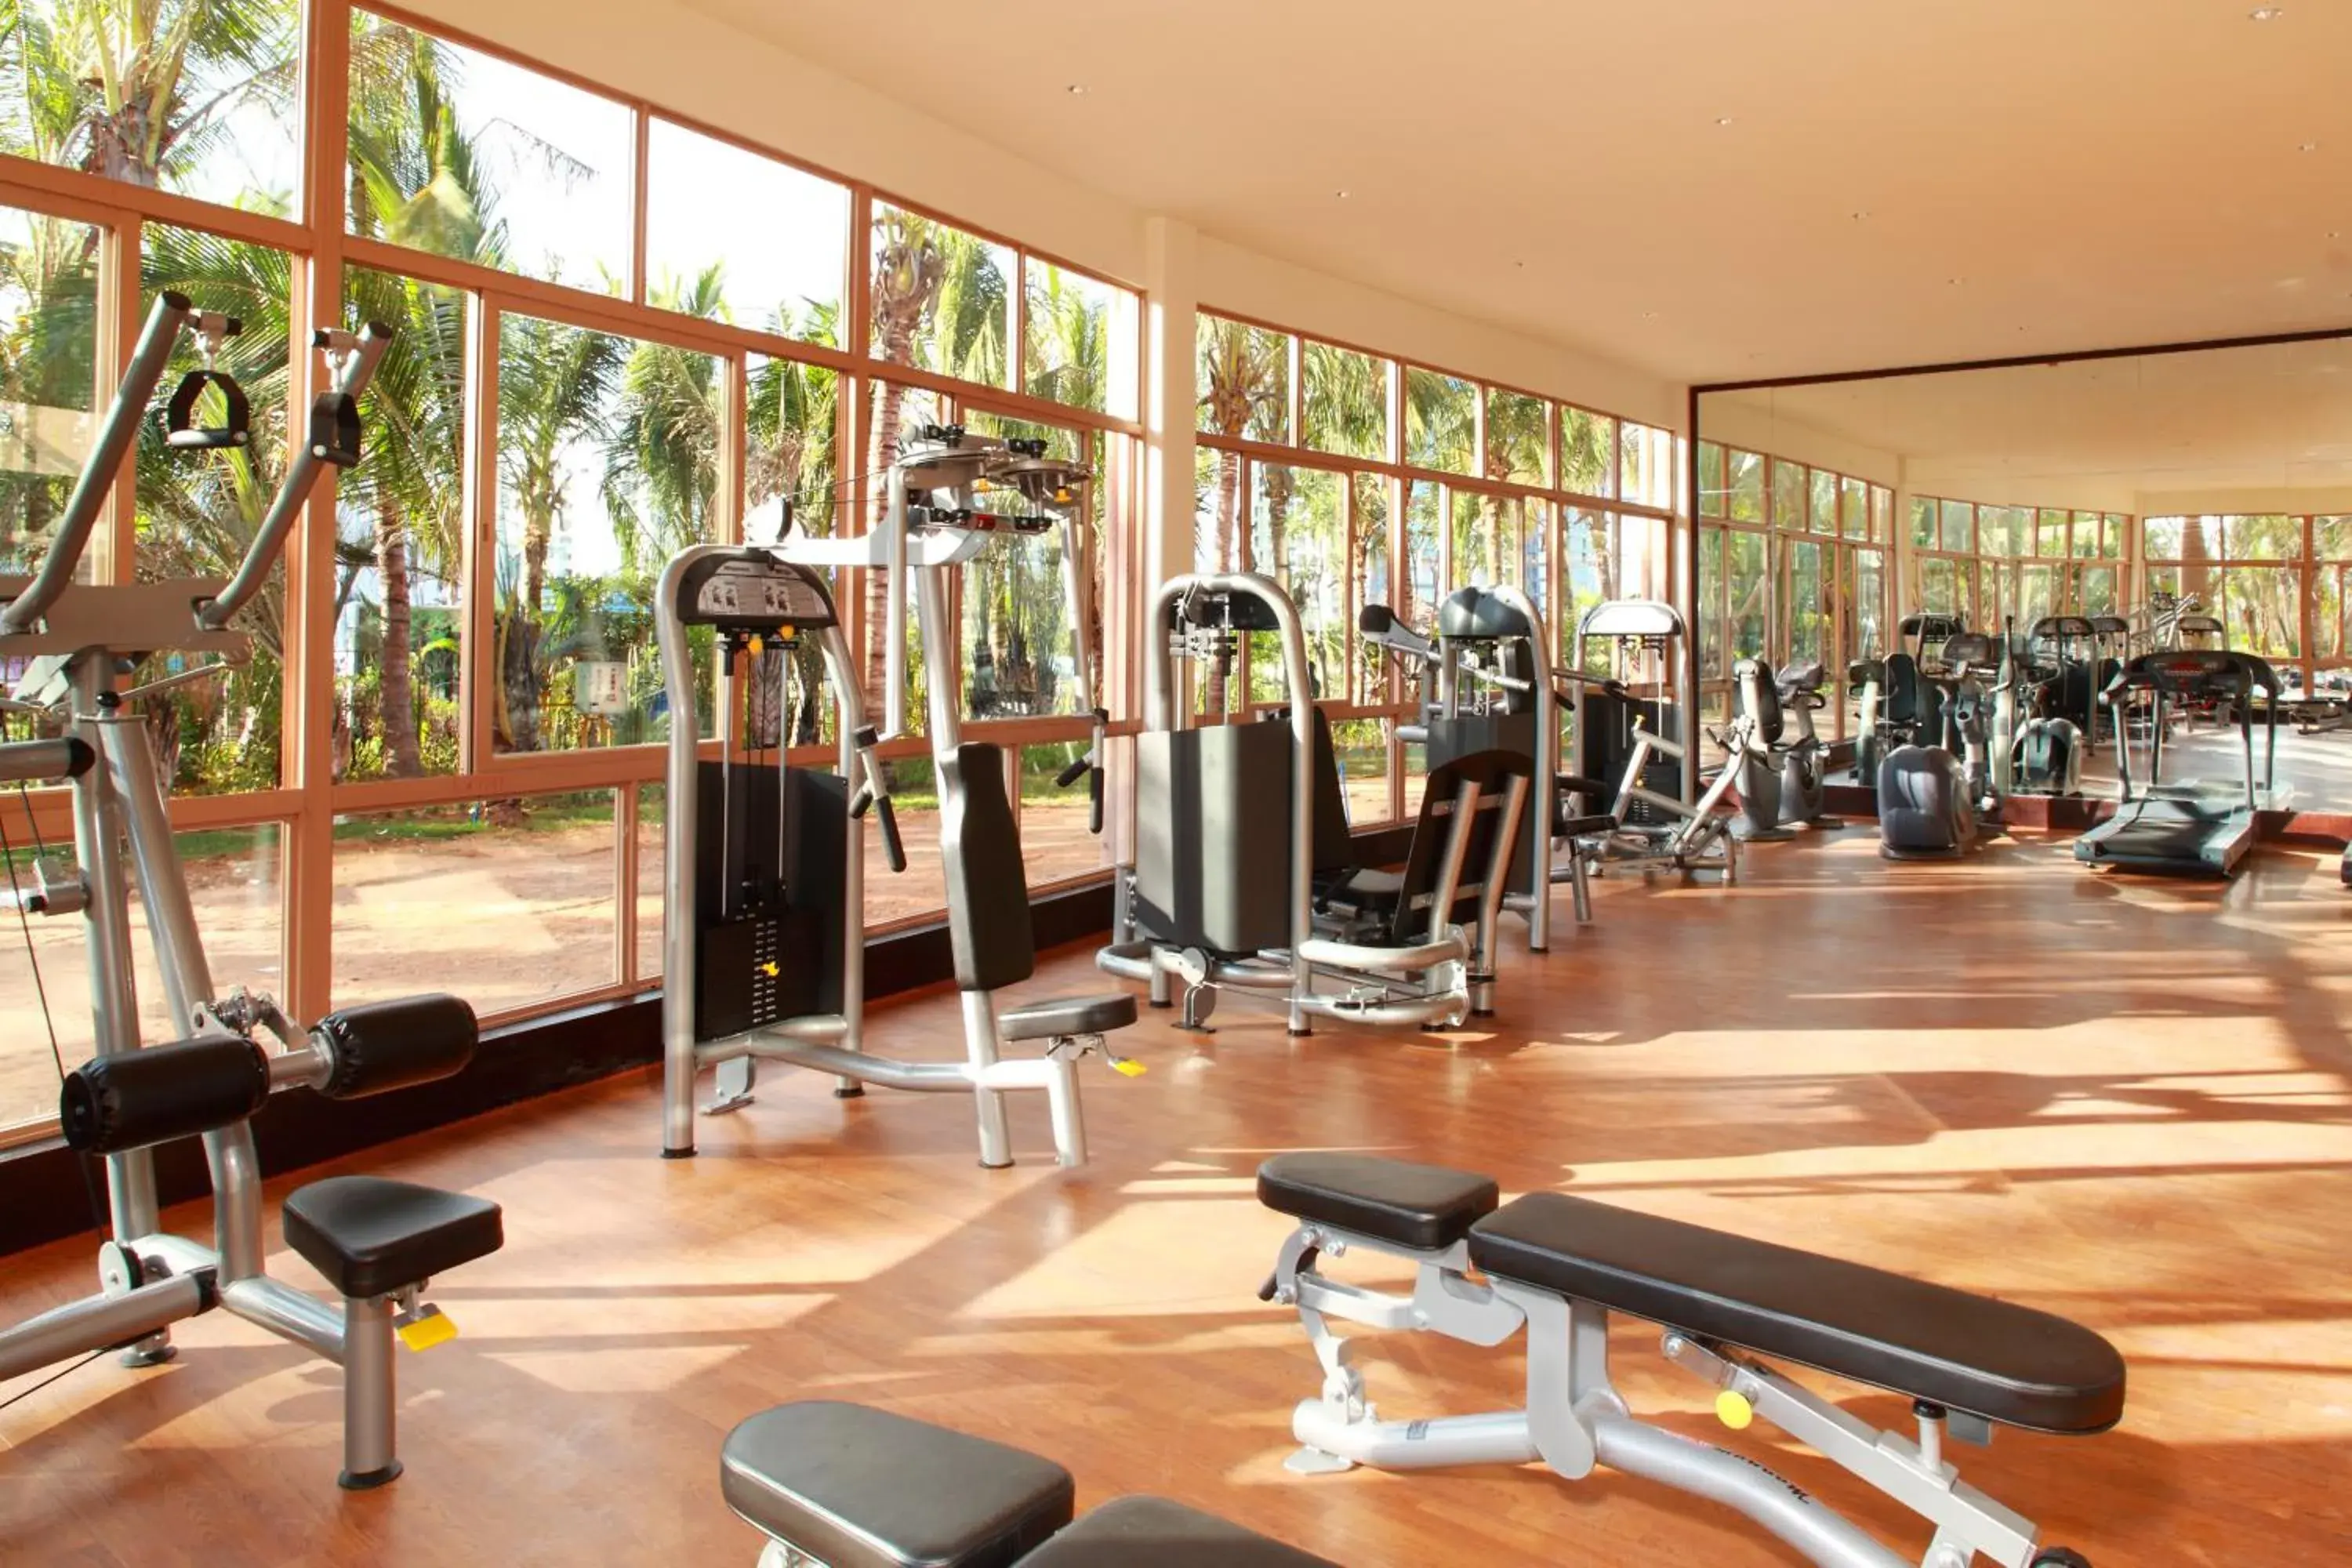 Fitness centre/facilities, Fitness Center/Facilities in Howard Johnson Resort Sanya Bay